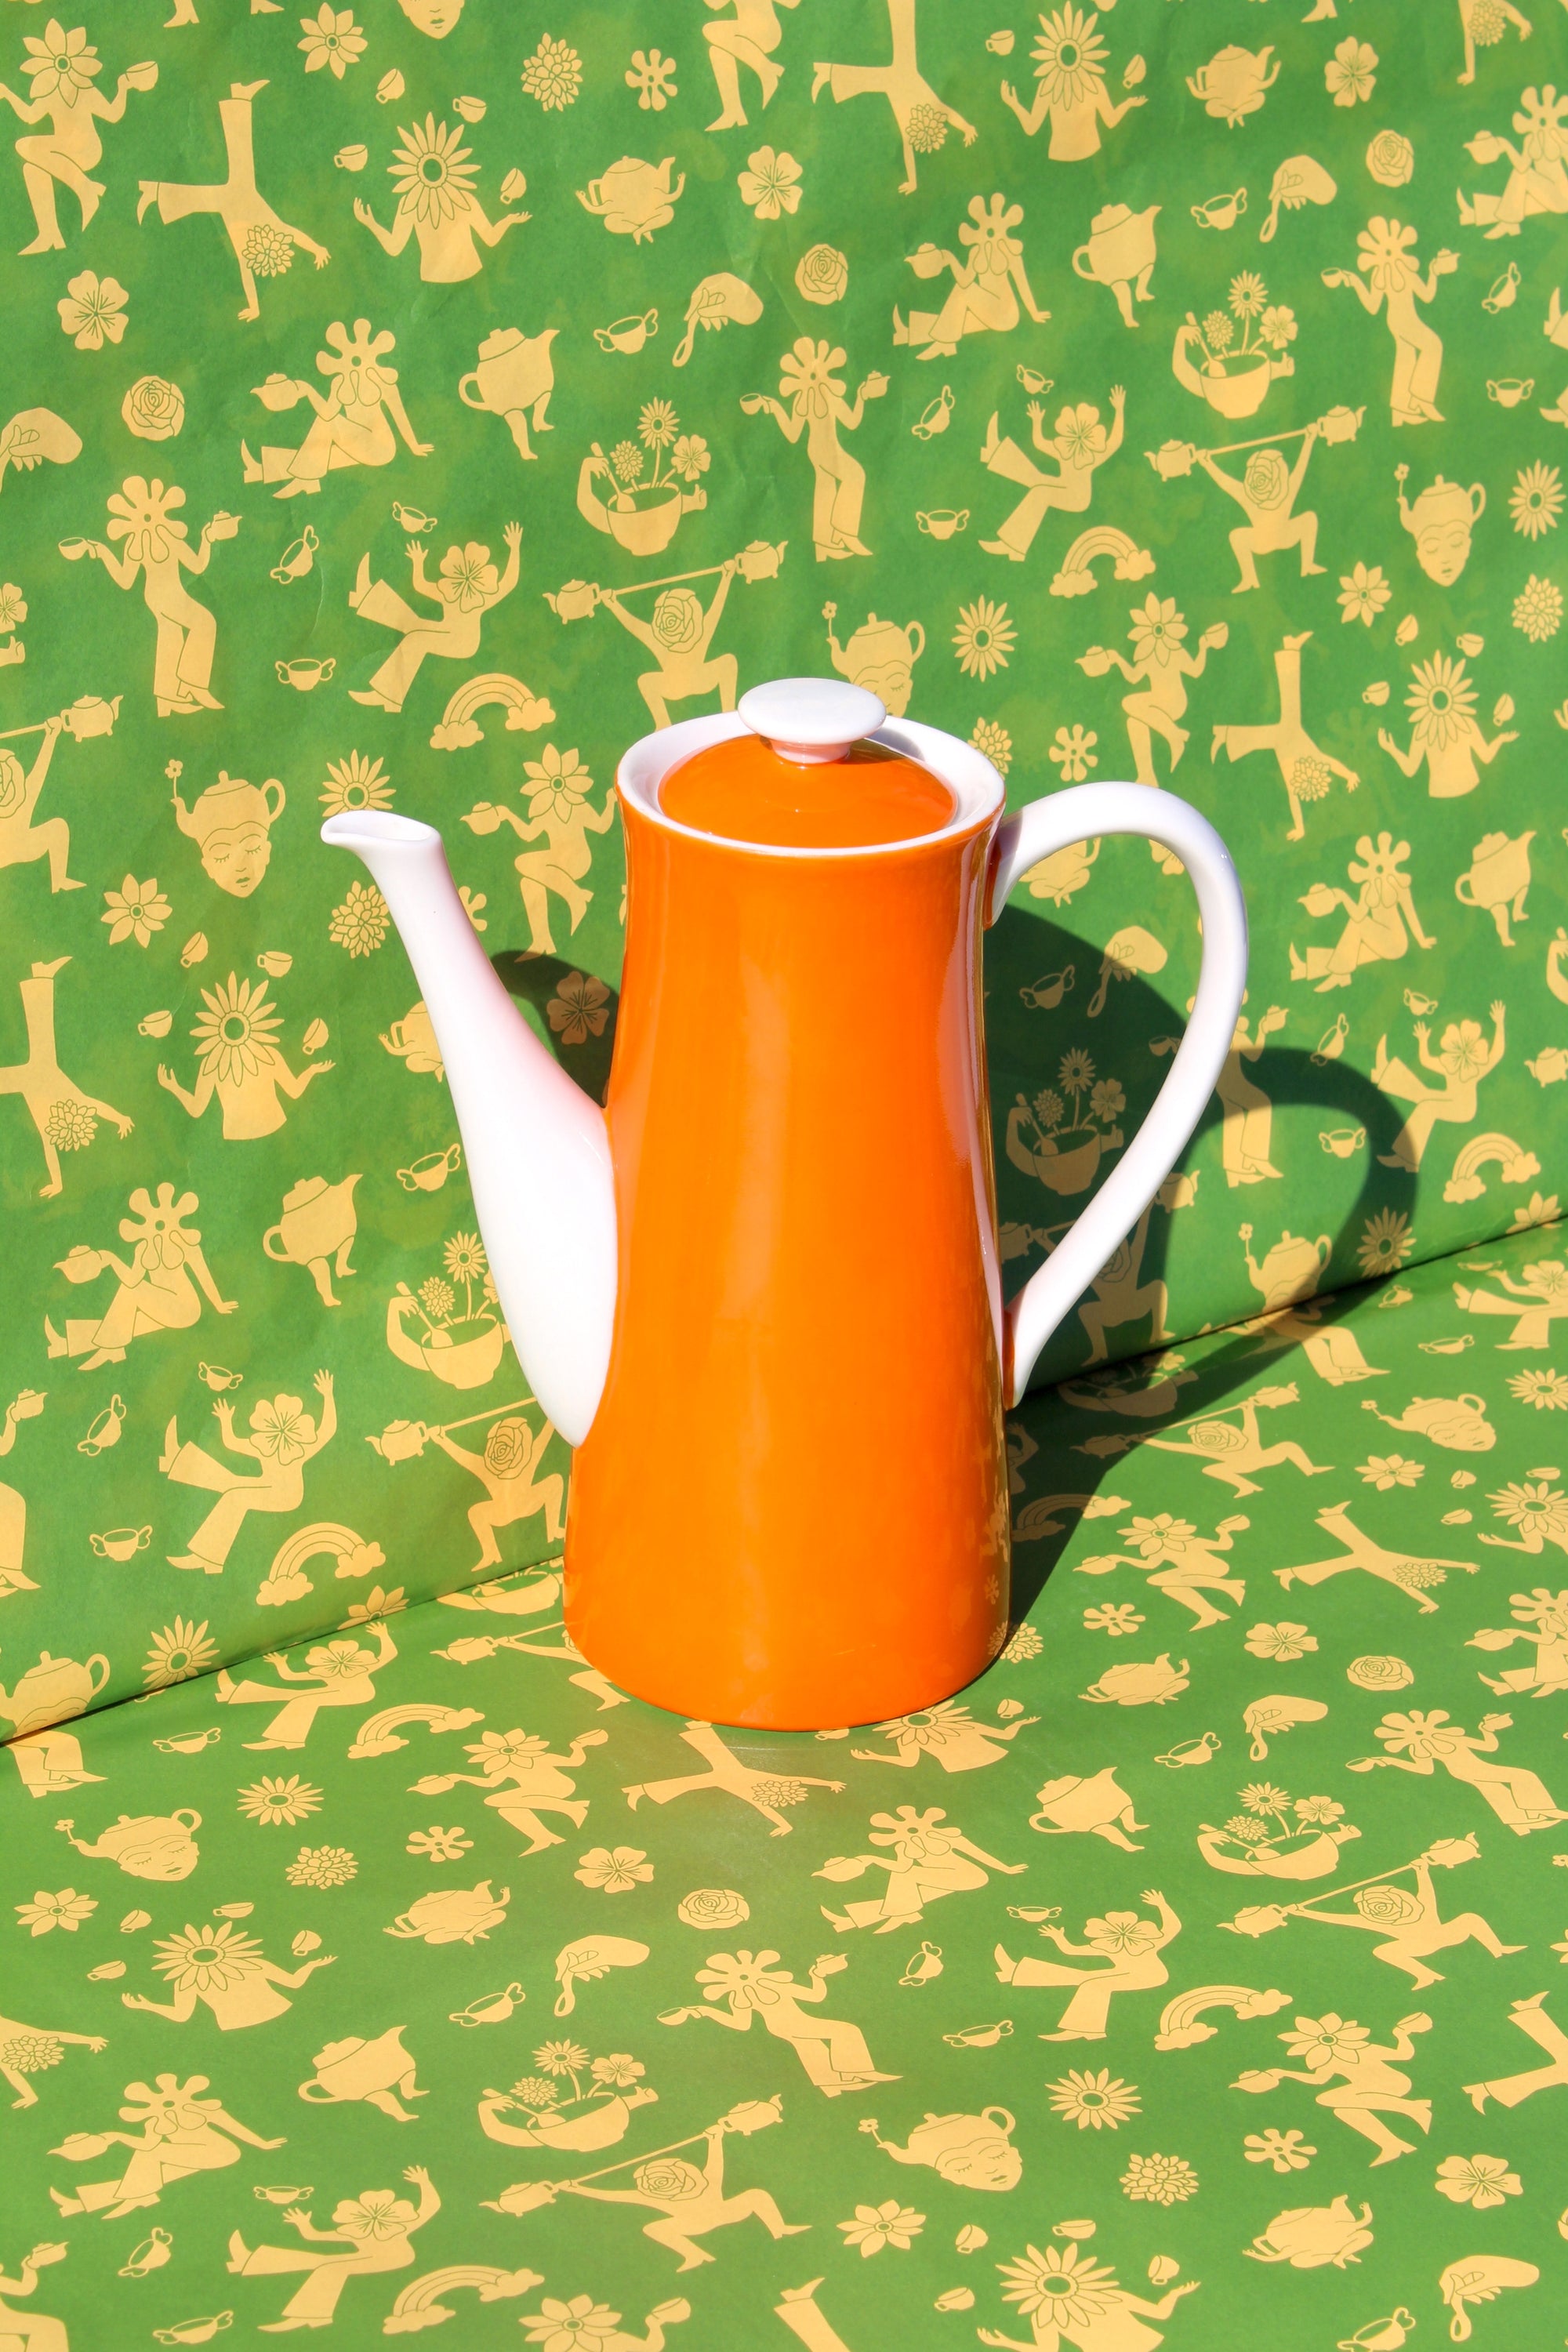 Orange Tea Pot